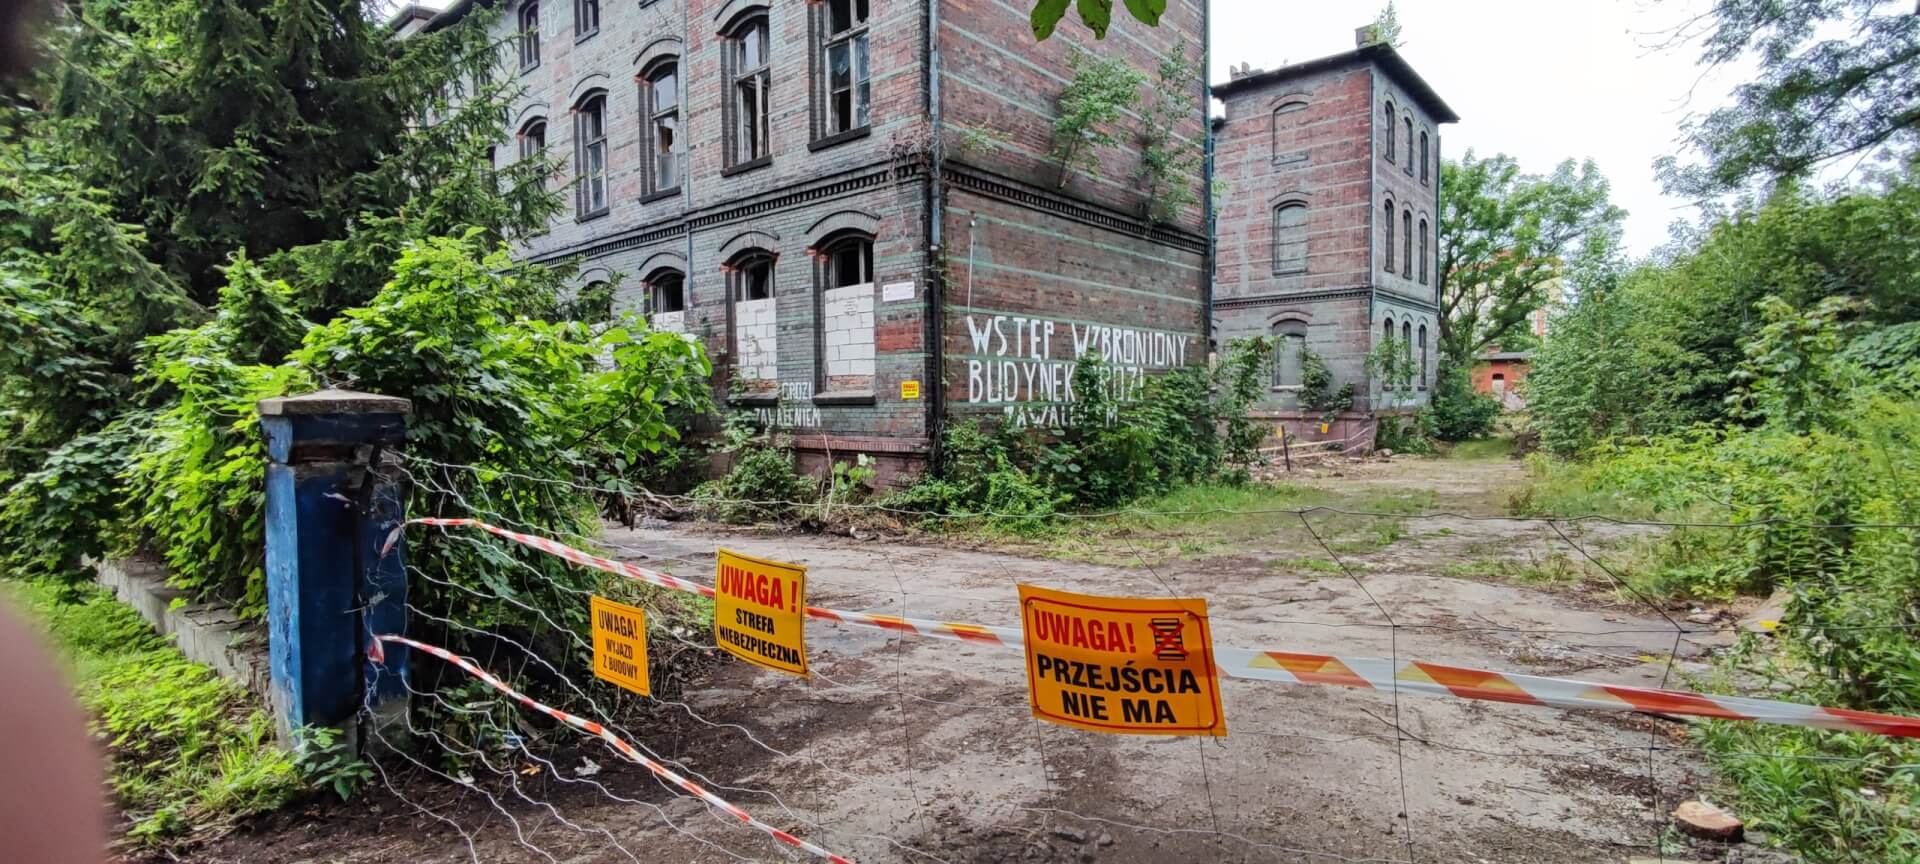 Smutny widok dawnego Szpitala Miejskiego w Wirku